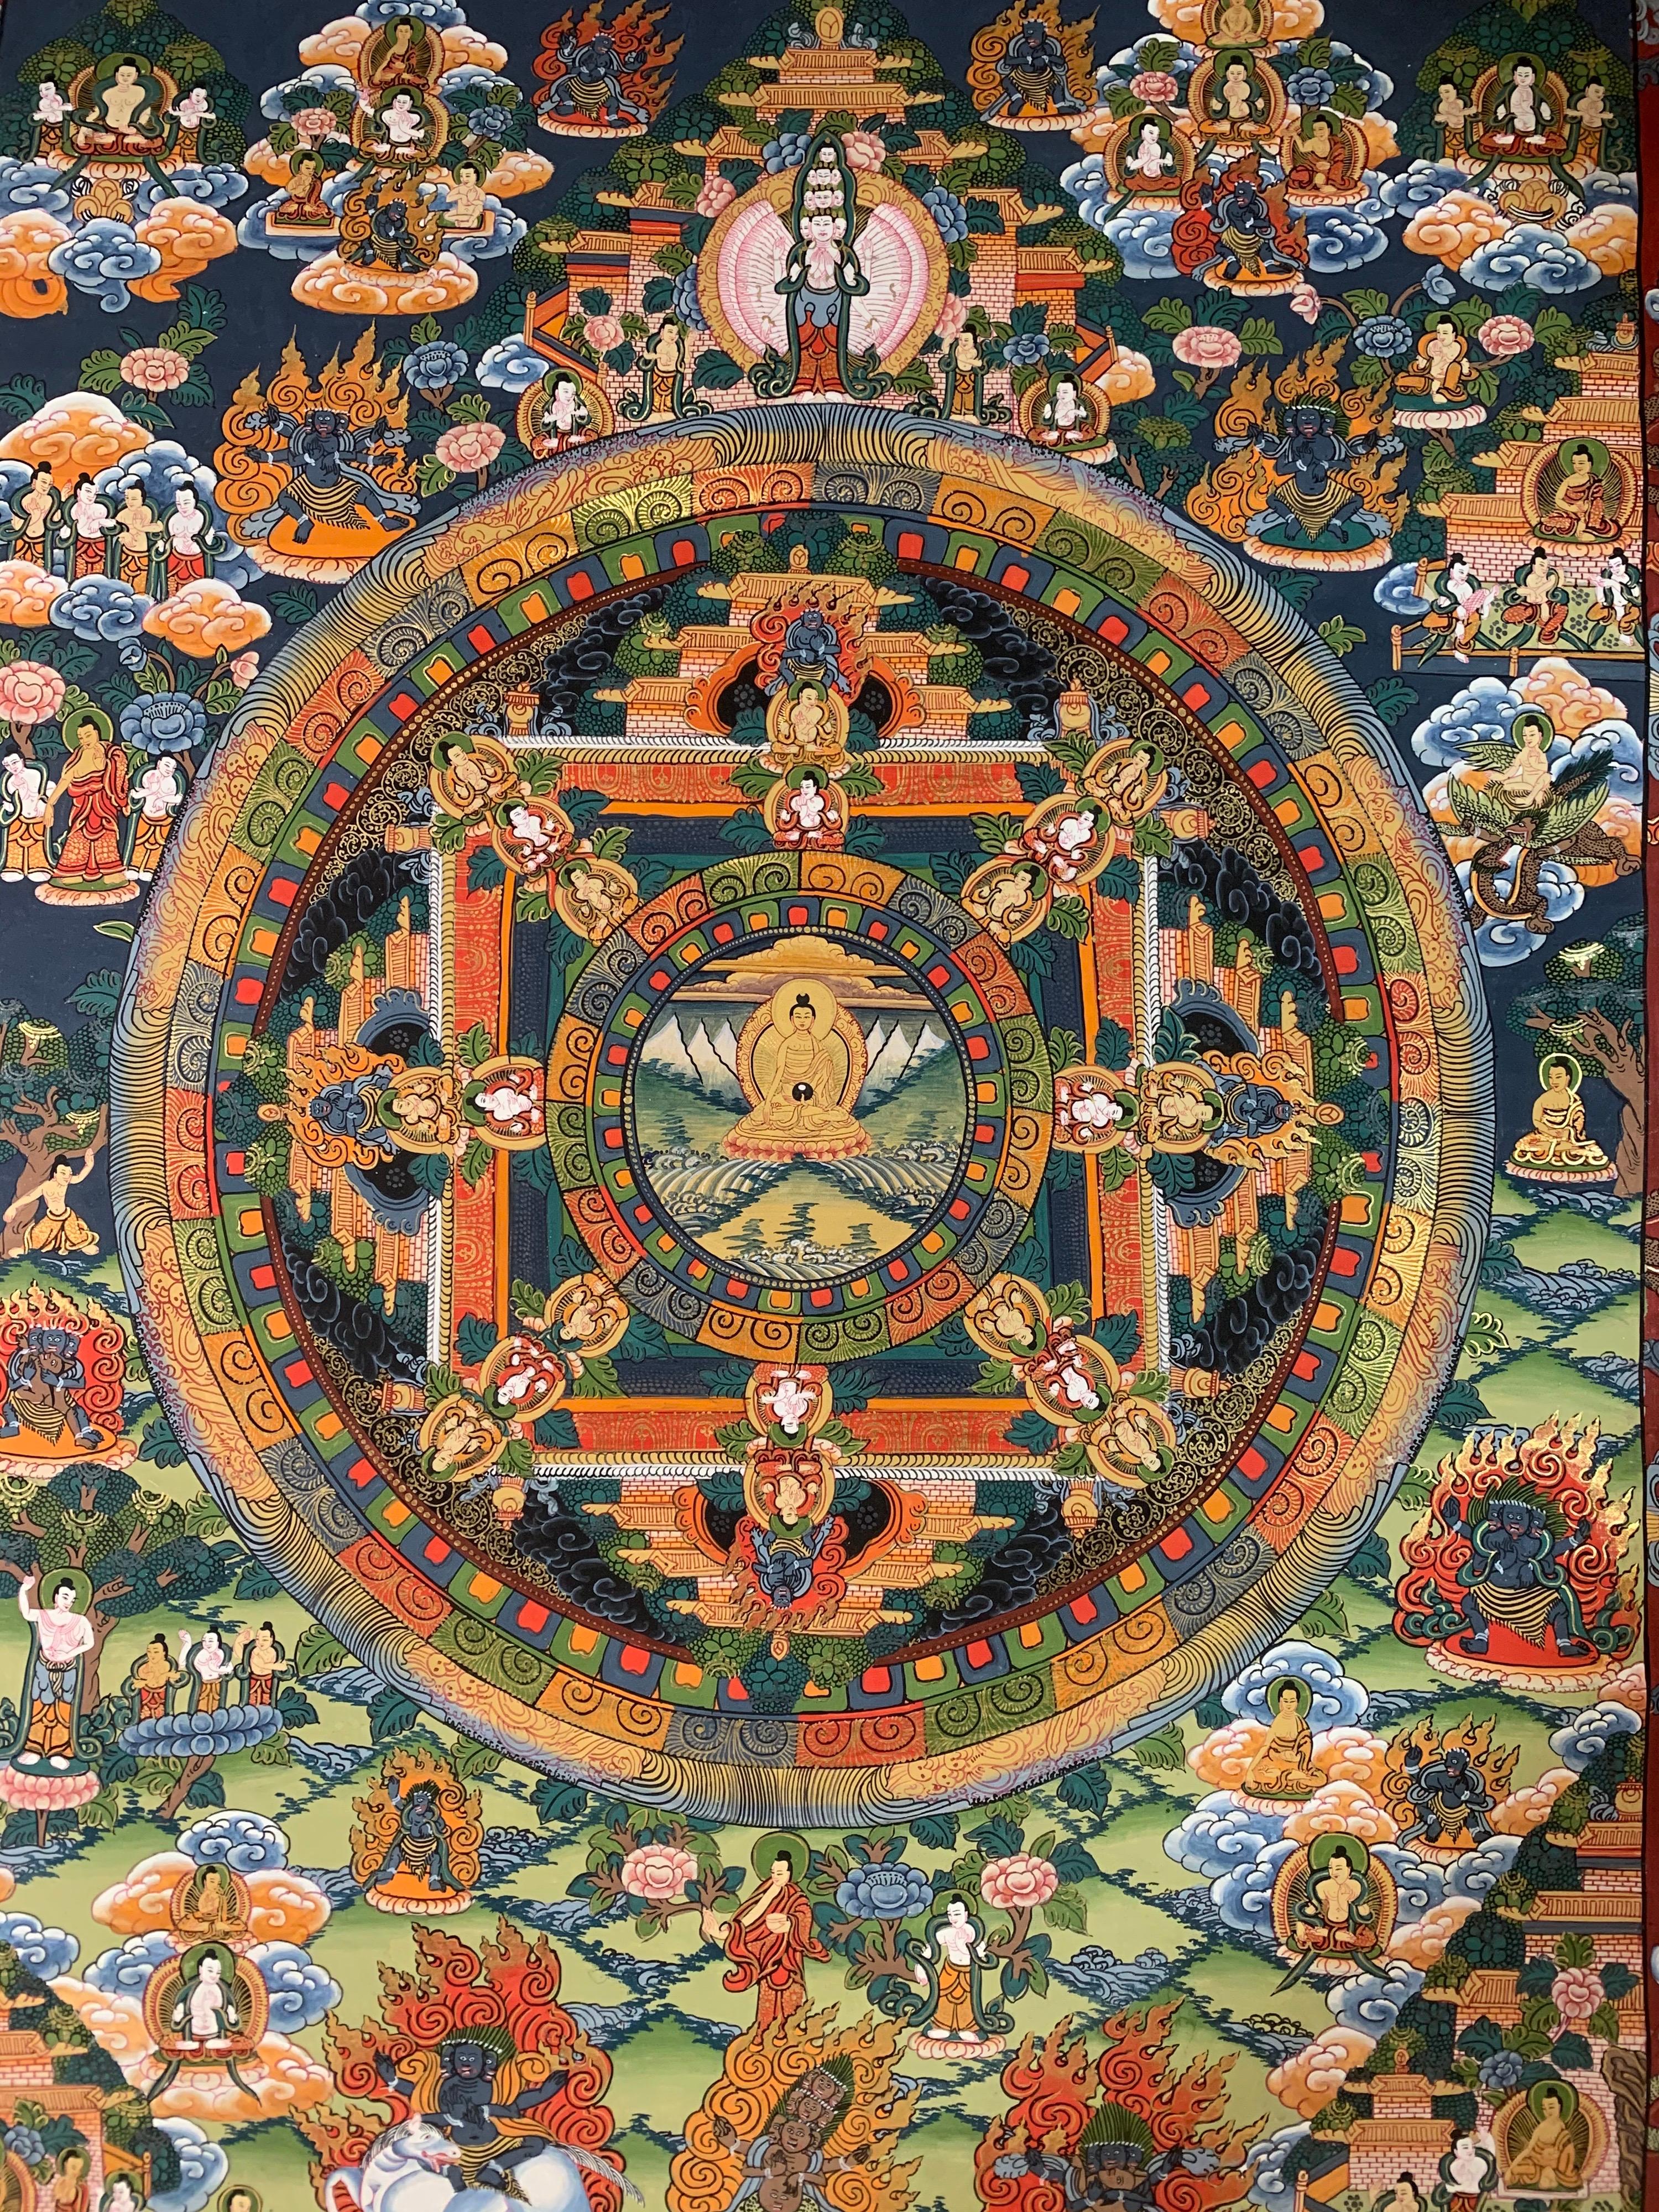 Ce thangka mandala est peint à la main sur toile avec de l'or 24k. Les différentes teintes de rouge, de vert et de blanc se fondent harmonieusement dans le scintillement de l'or véritable.
La taille de la toile non encadrée est de 28 